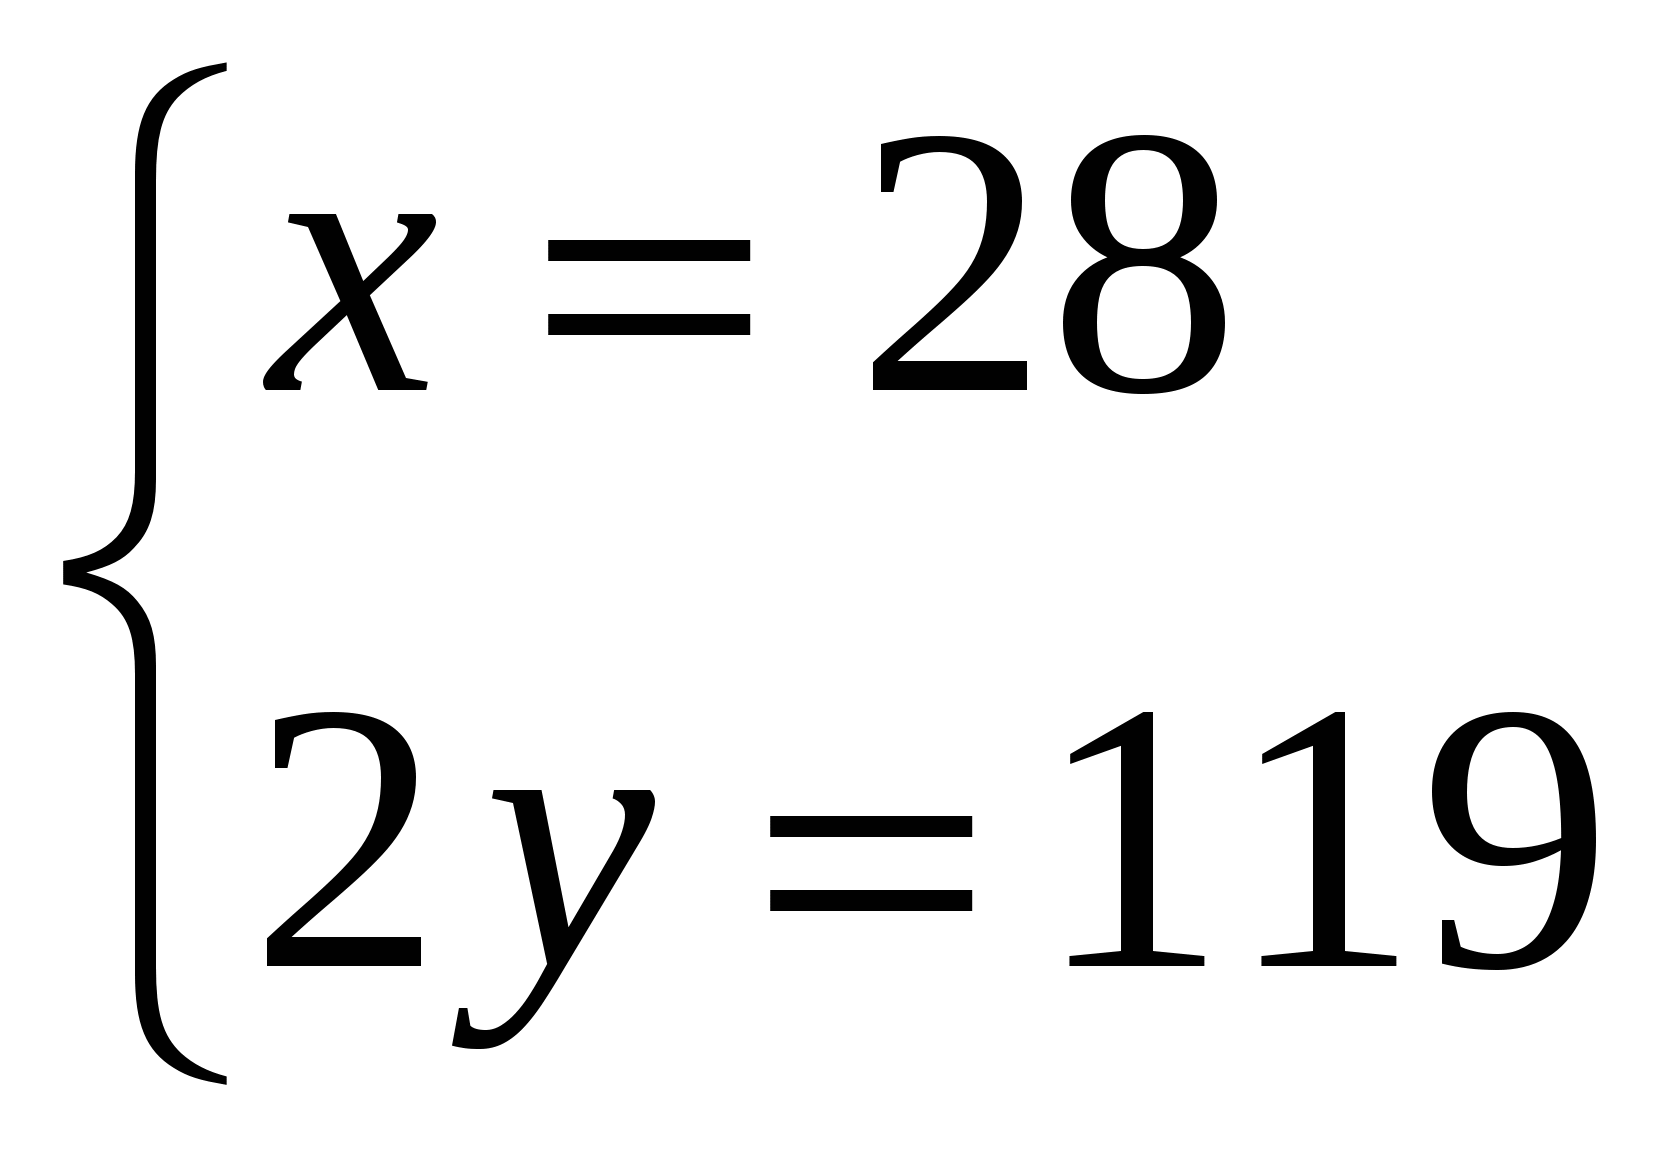 Урок алгебры по теме Системы двух линейных уравнений с двумя переменными как математические модели реальных ситуаций